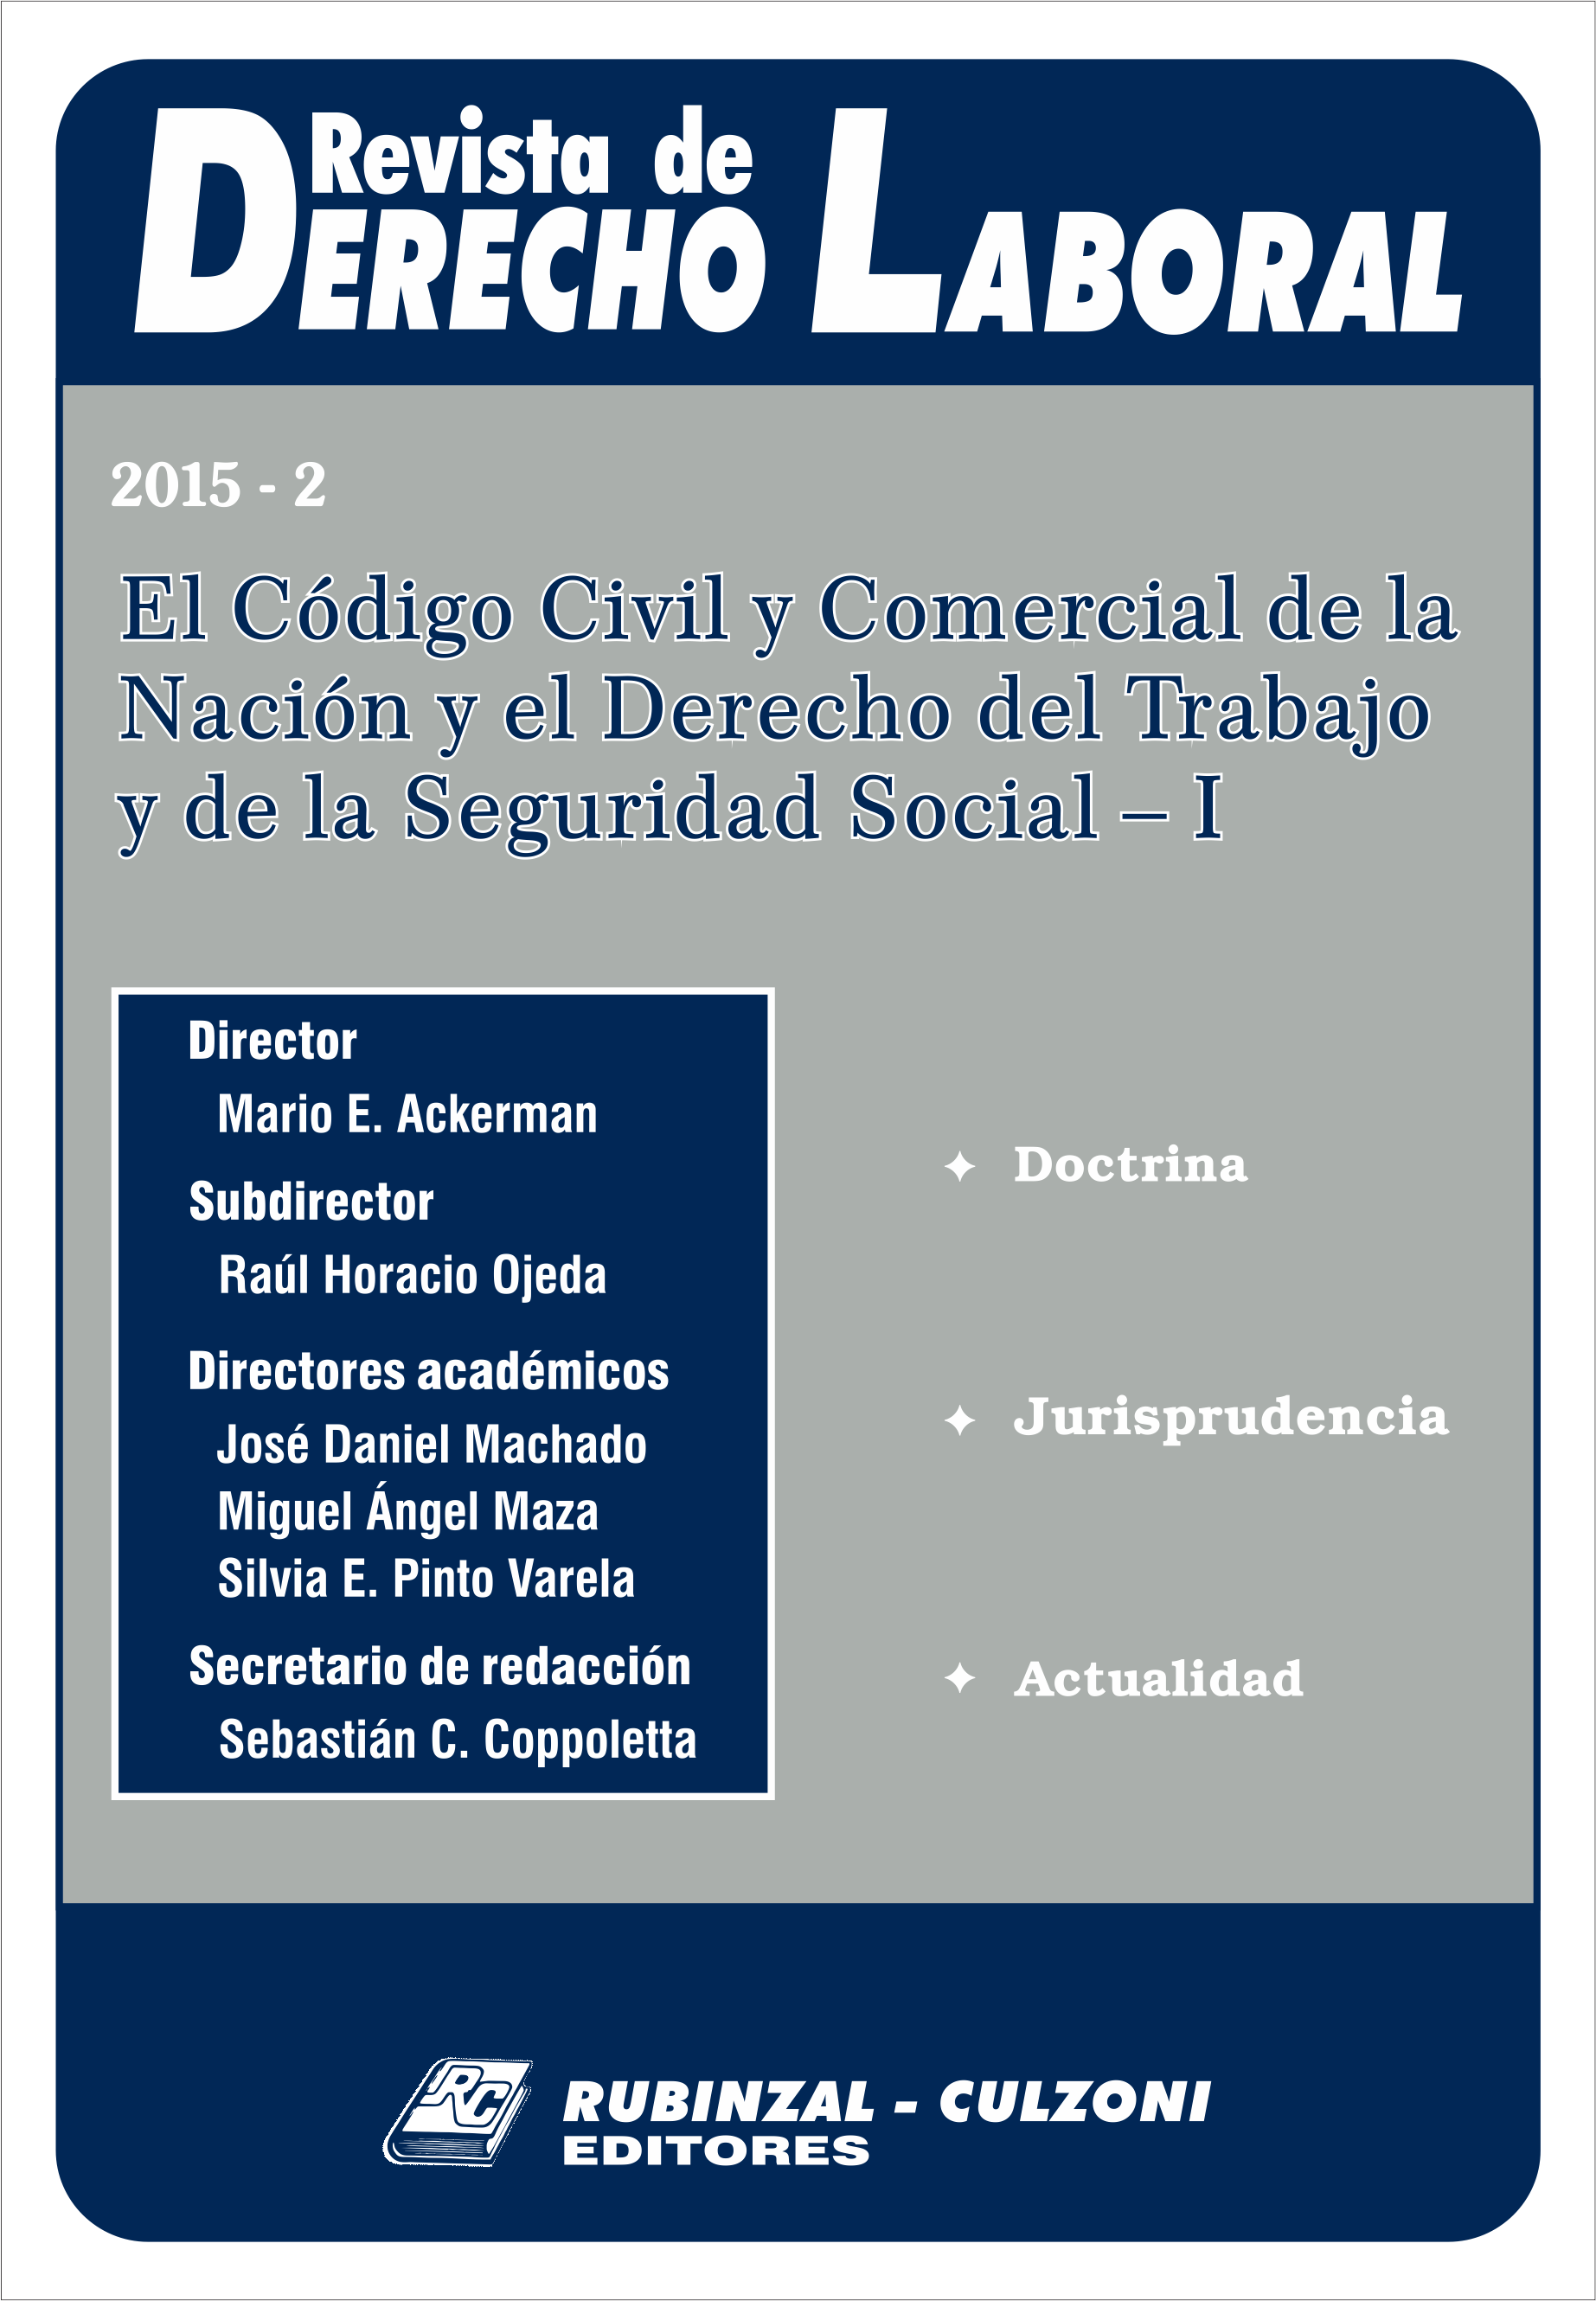  - El Código Civil y Comercial de la Nación y el Derecho del Trabajo y de la Seguridad Social - I. [2015-2]